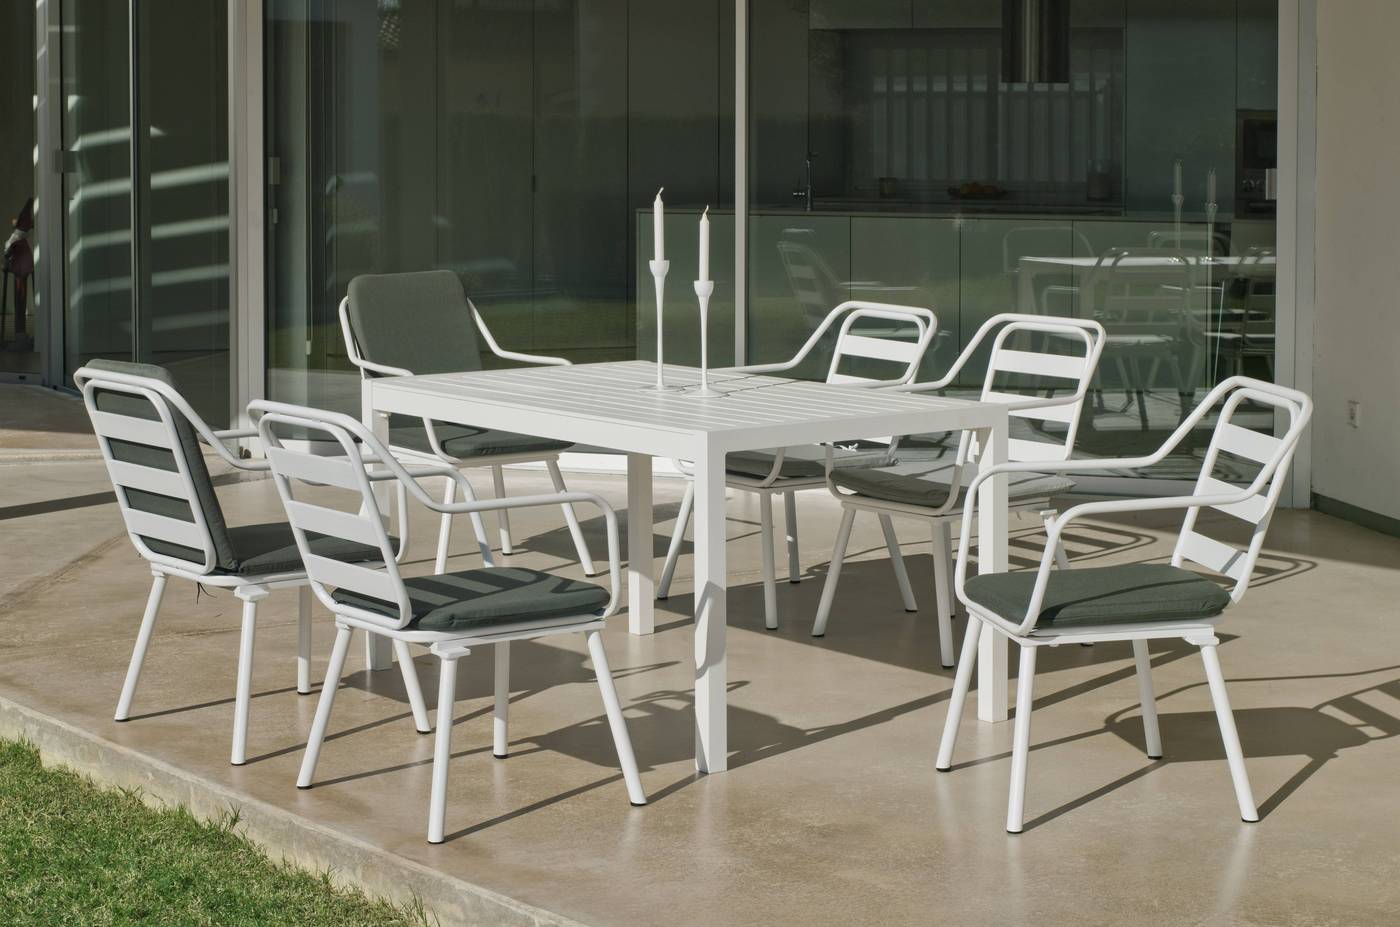 Conjunto aluminio luxe: mesa rectangular de 200 cm. + 6 sillones. Disponible en color blanco y color antracita.